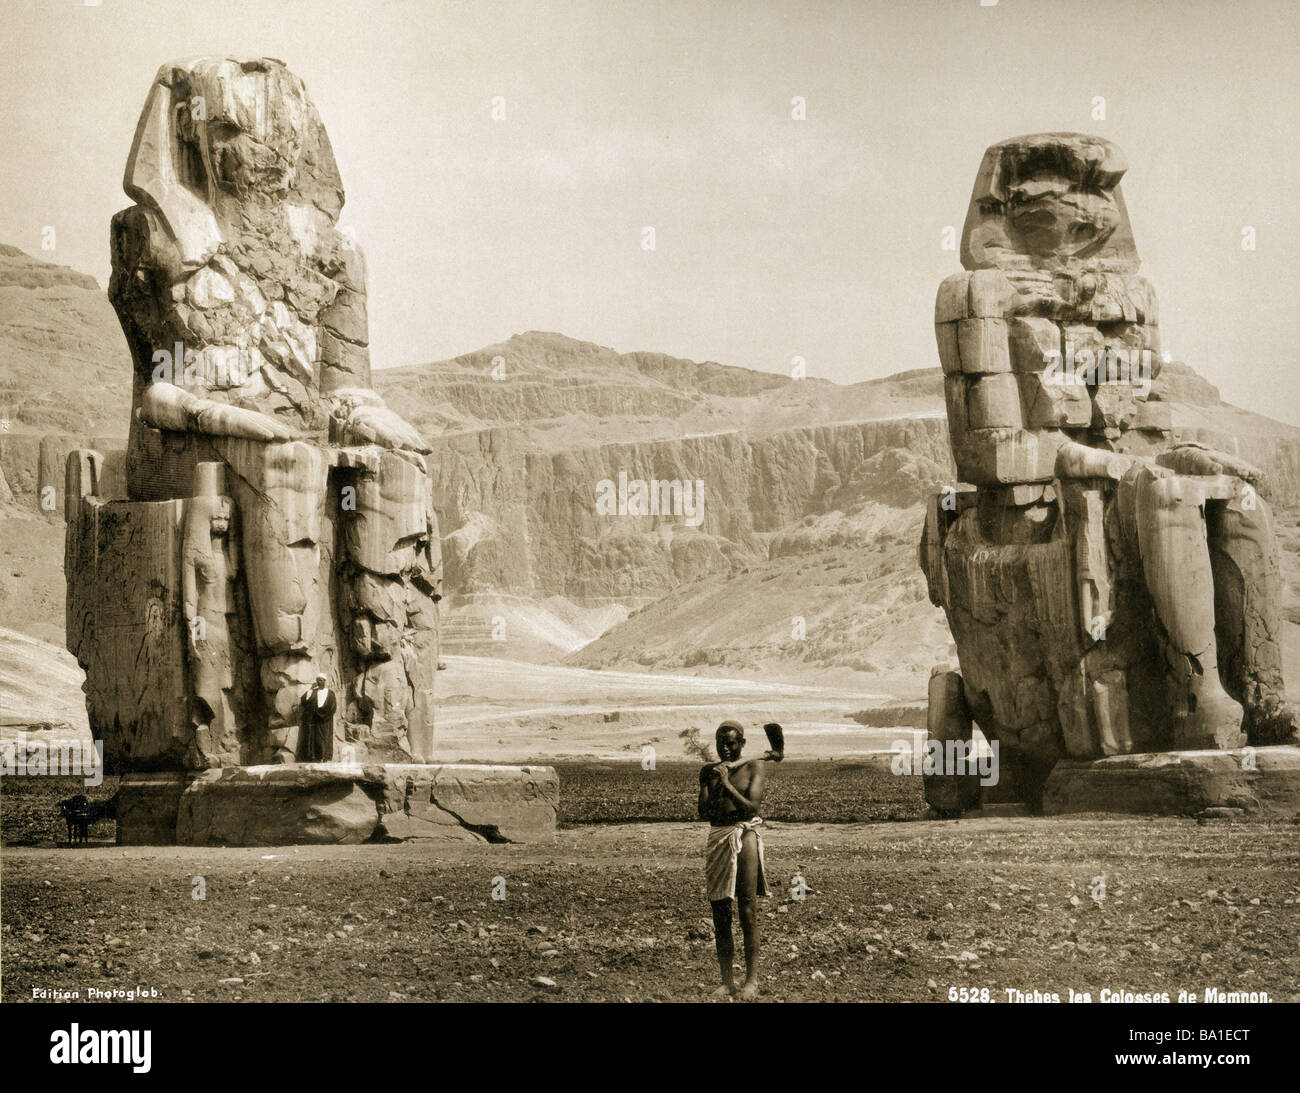 Geografia / viaggio, Egitto, Tebe West Bank, Colossi di Memnon, statue di re Amenhotep III (circa 1402 - 1364 a.C., dinastia 18th), Edizione Photoglob, circa 1890, Foto Stock